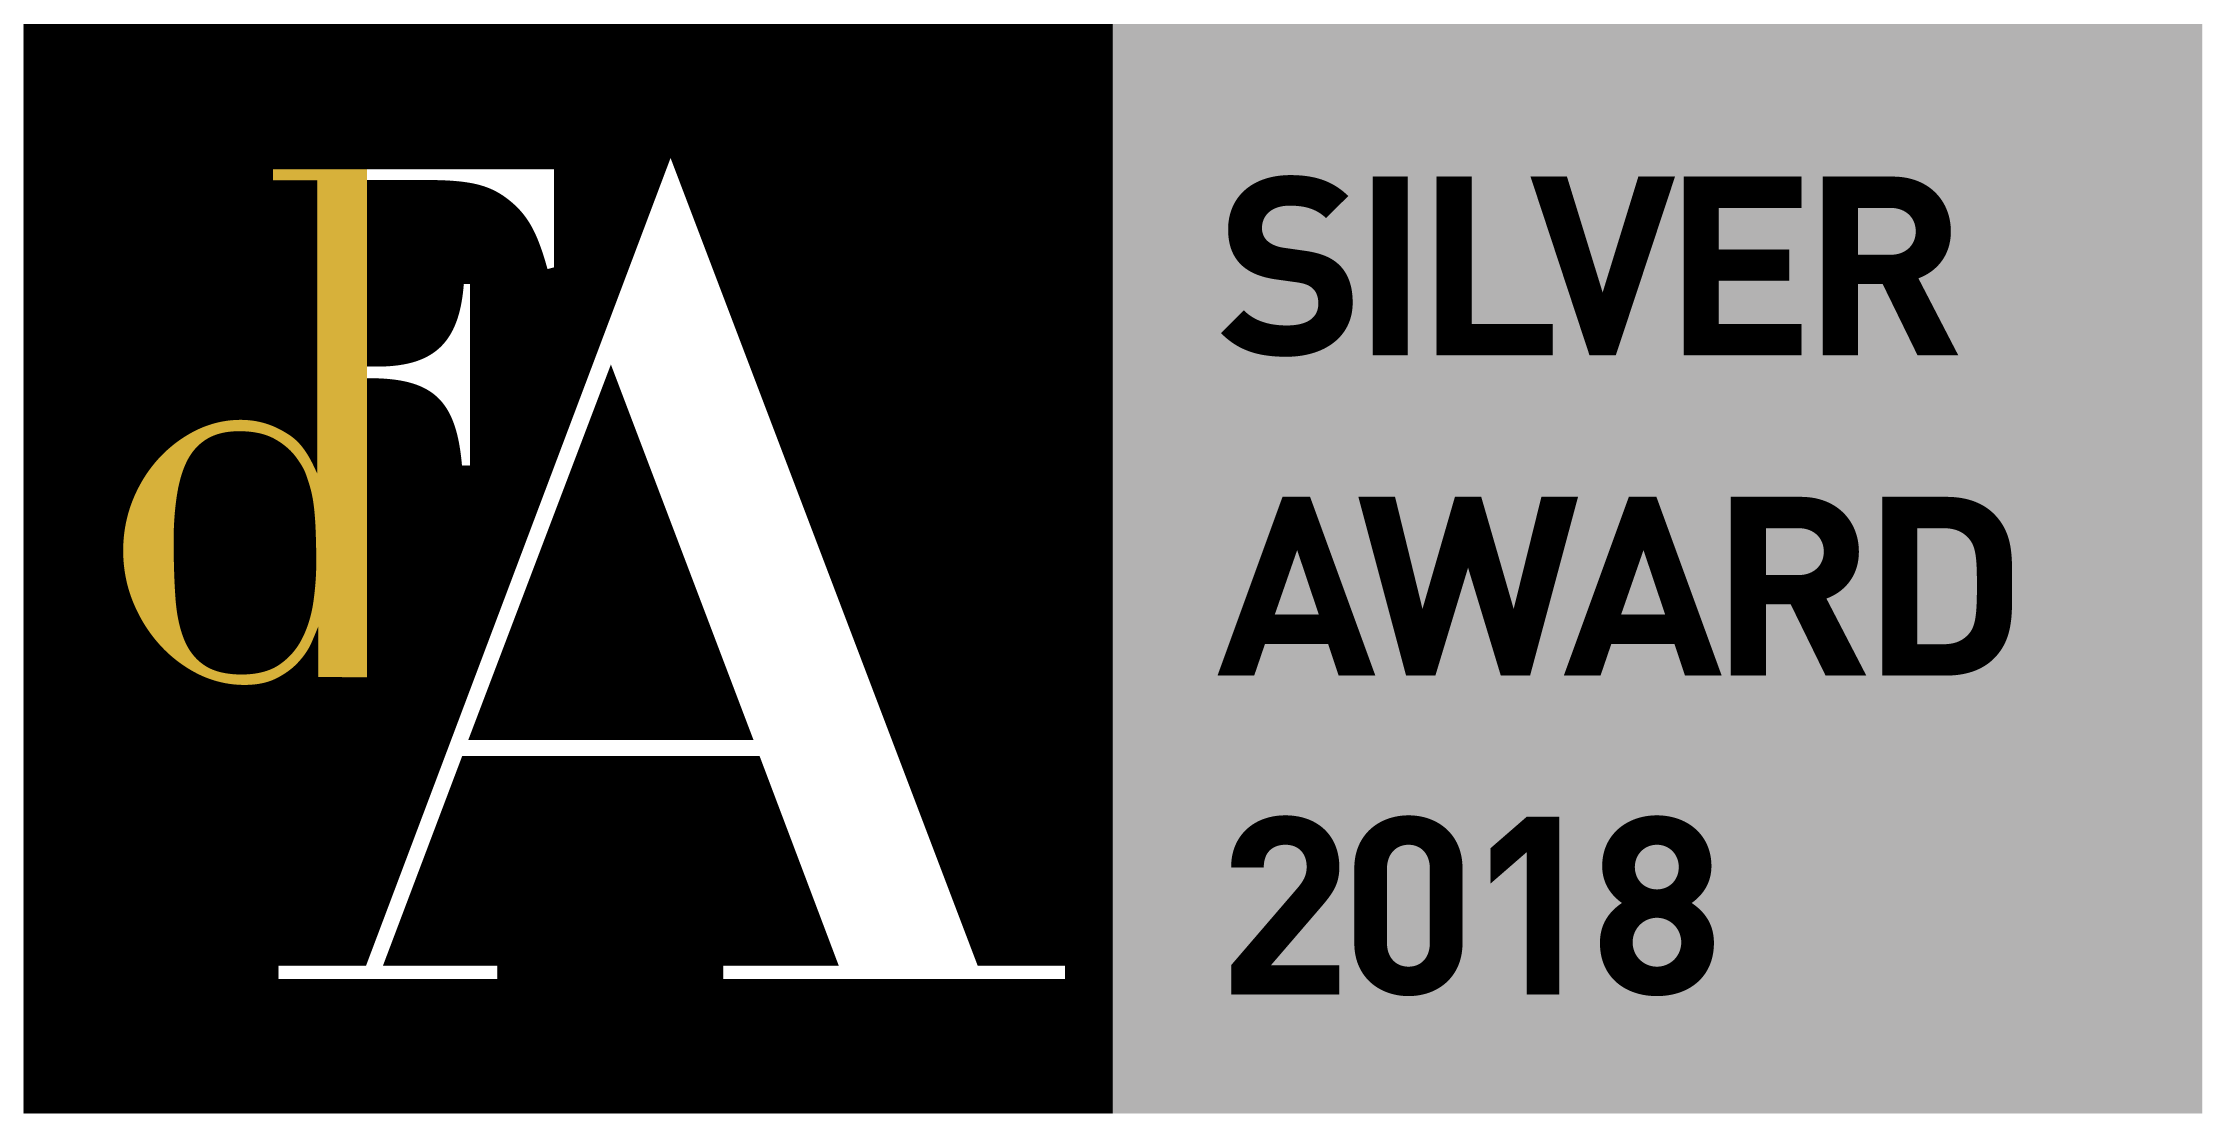 DFA Design for Asia Awards 2018 - Silver Award